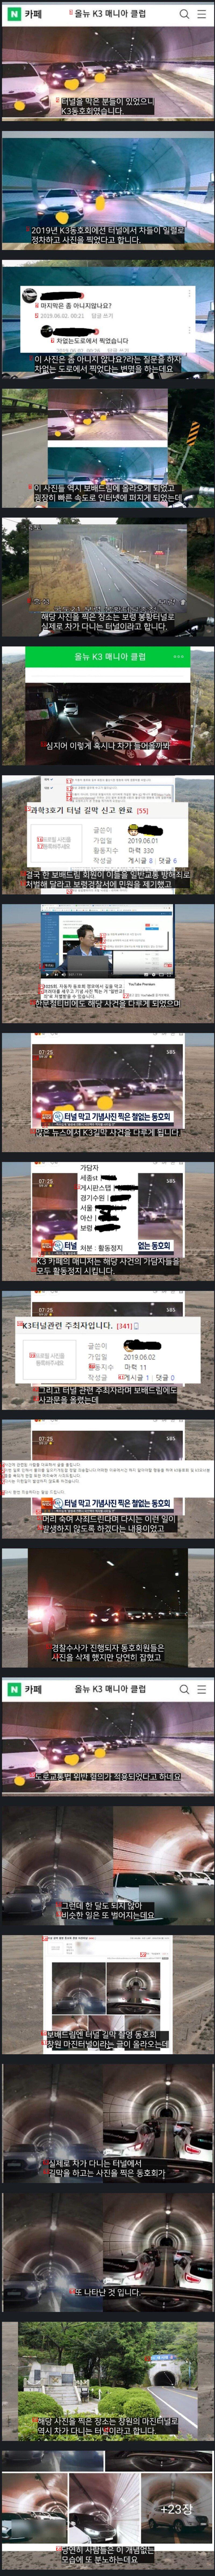 미처버린 차량 동호회 활동 레전드